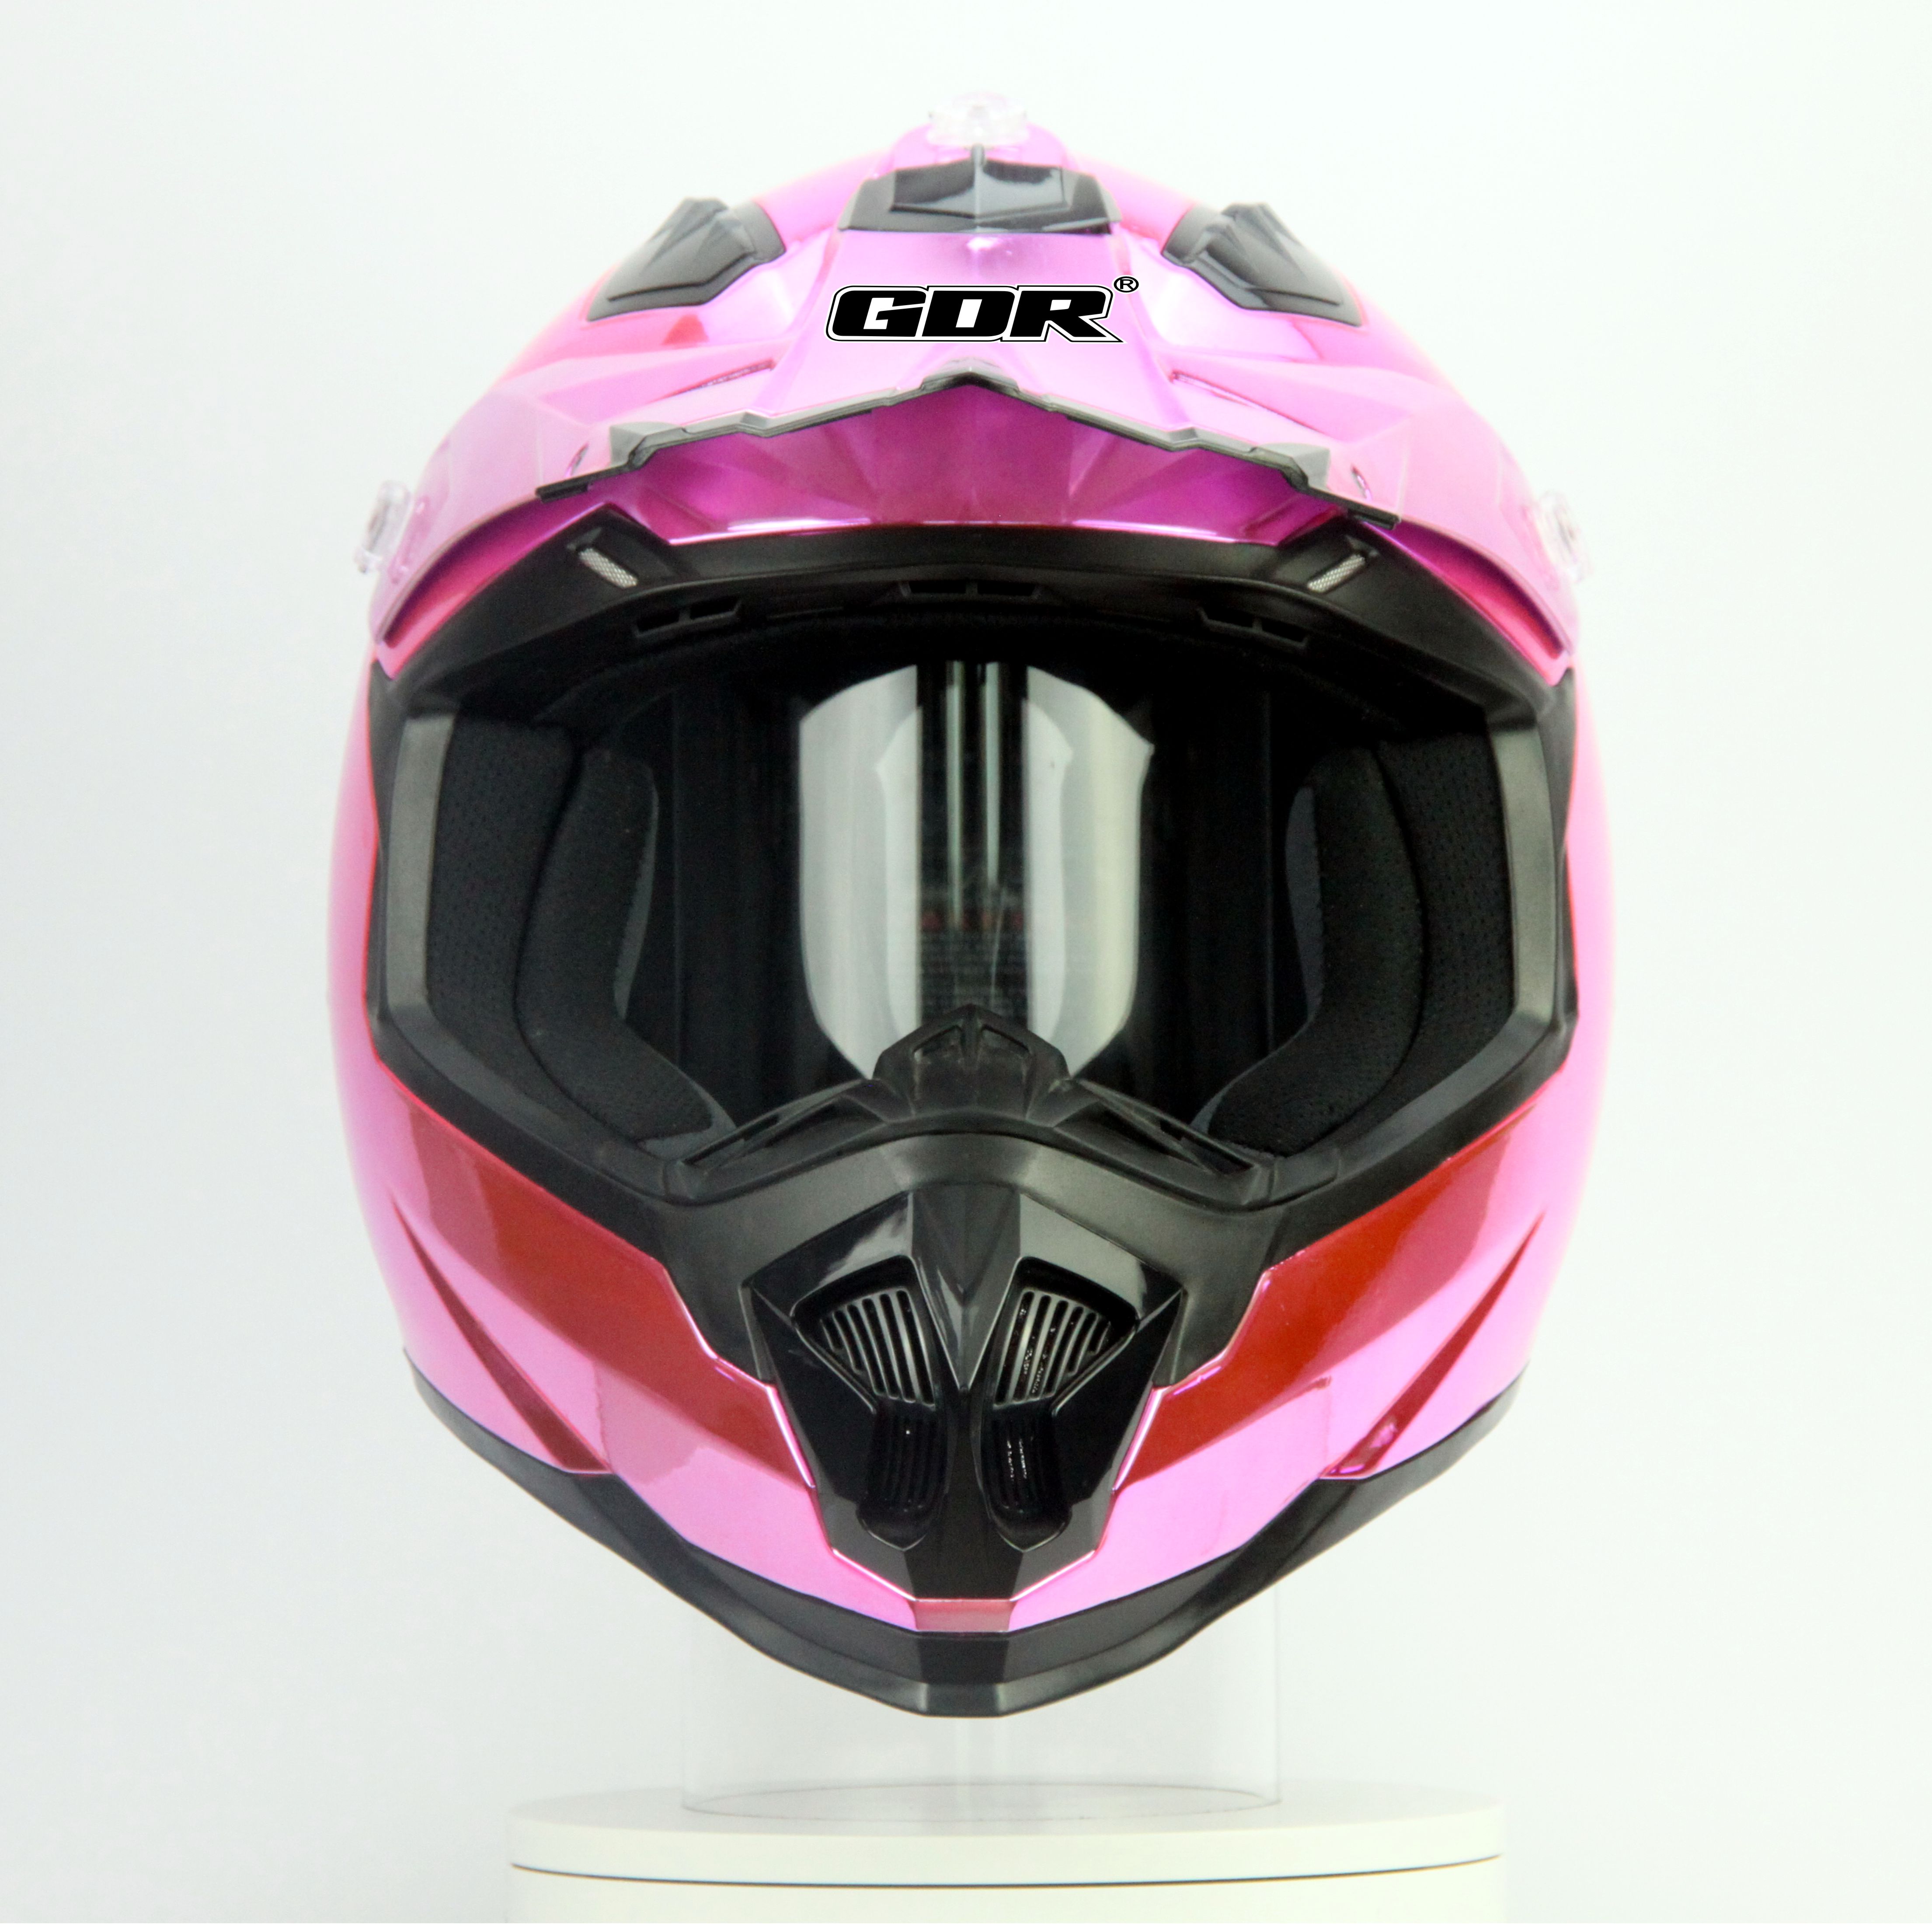 头盔 摩托车头盔 越野头盔 安全头盔 全盔 MX315